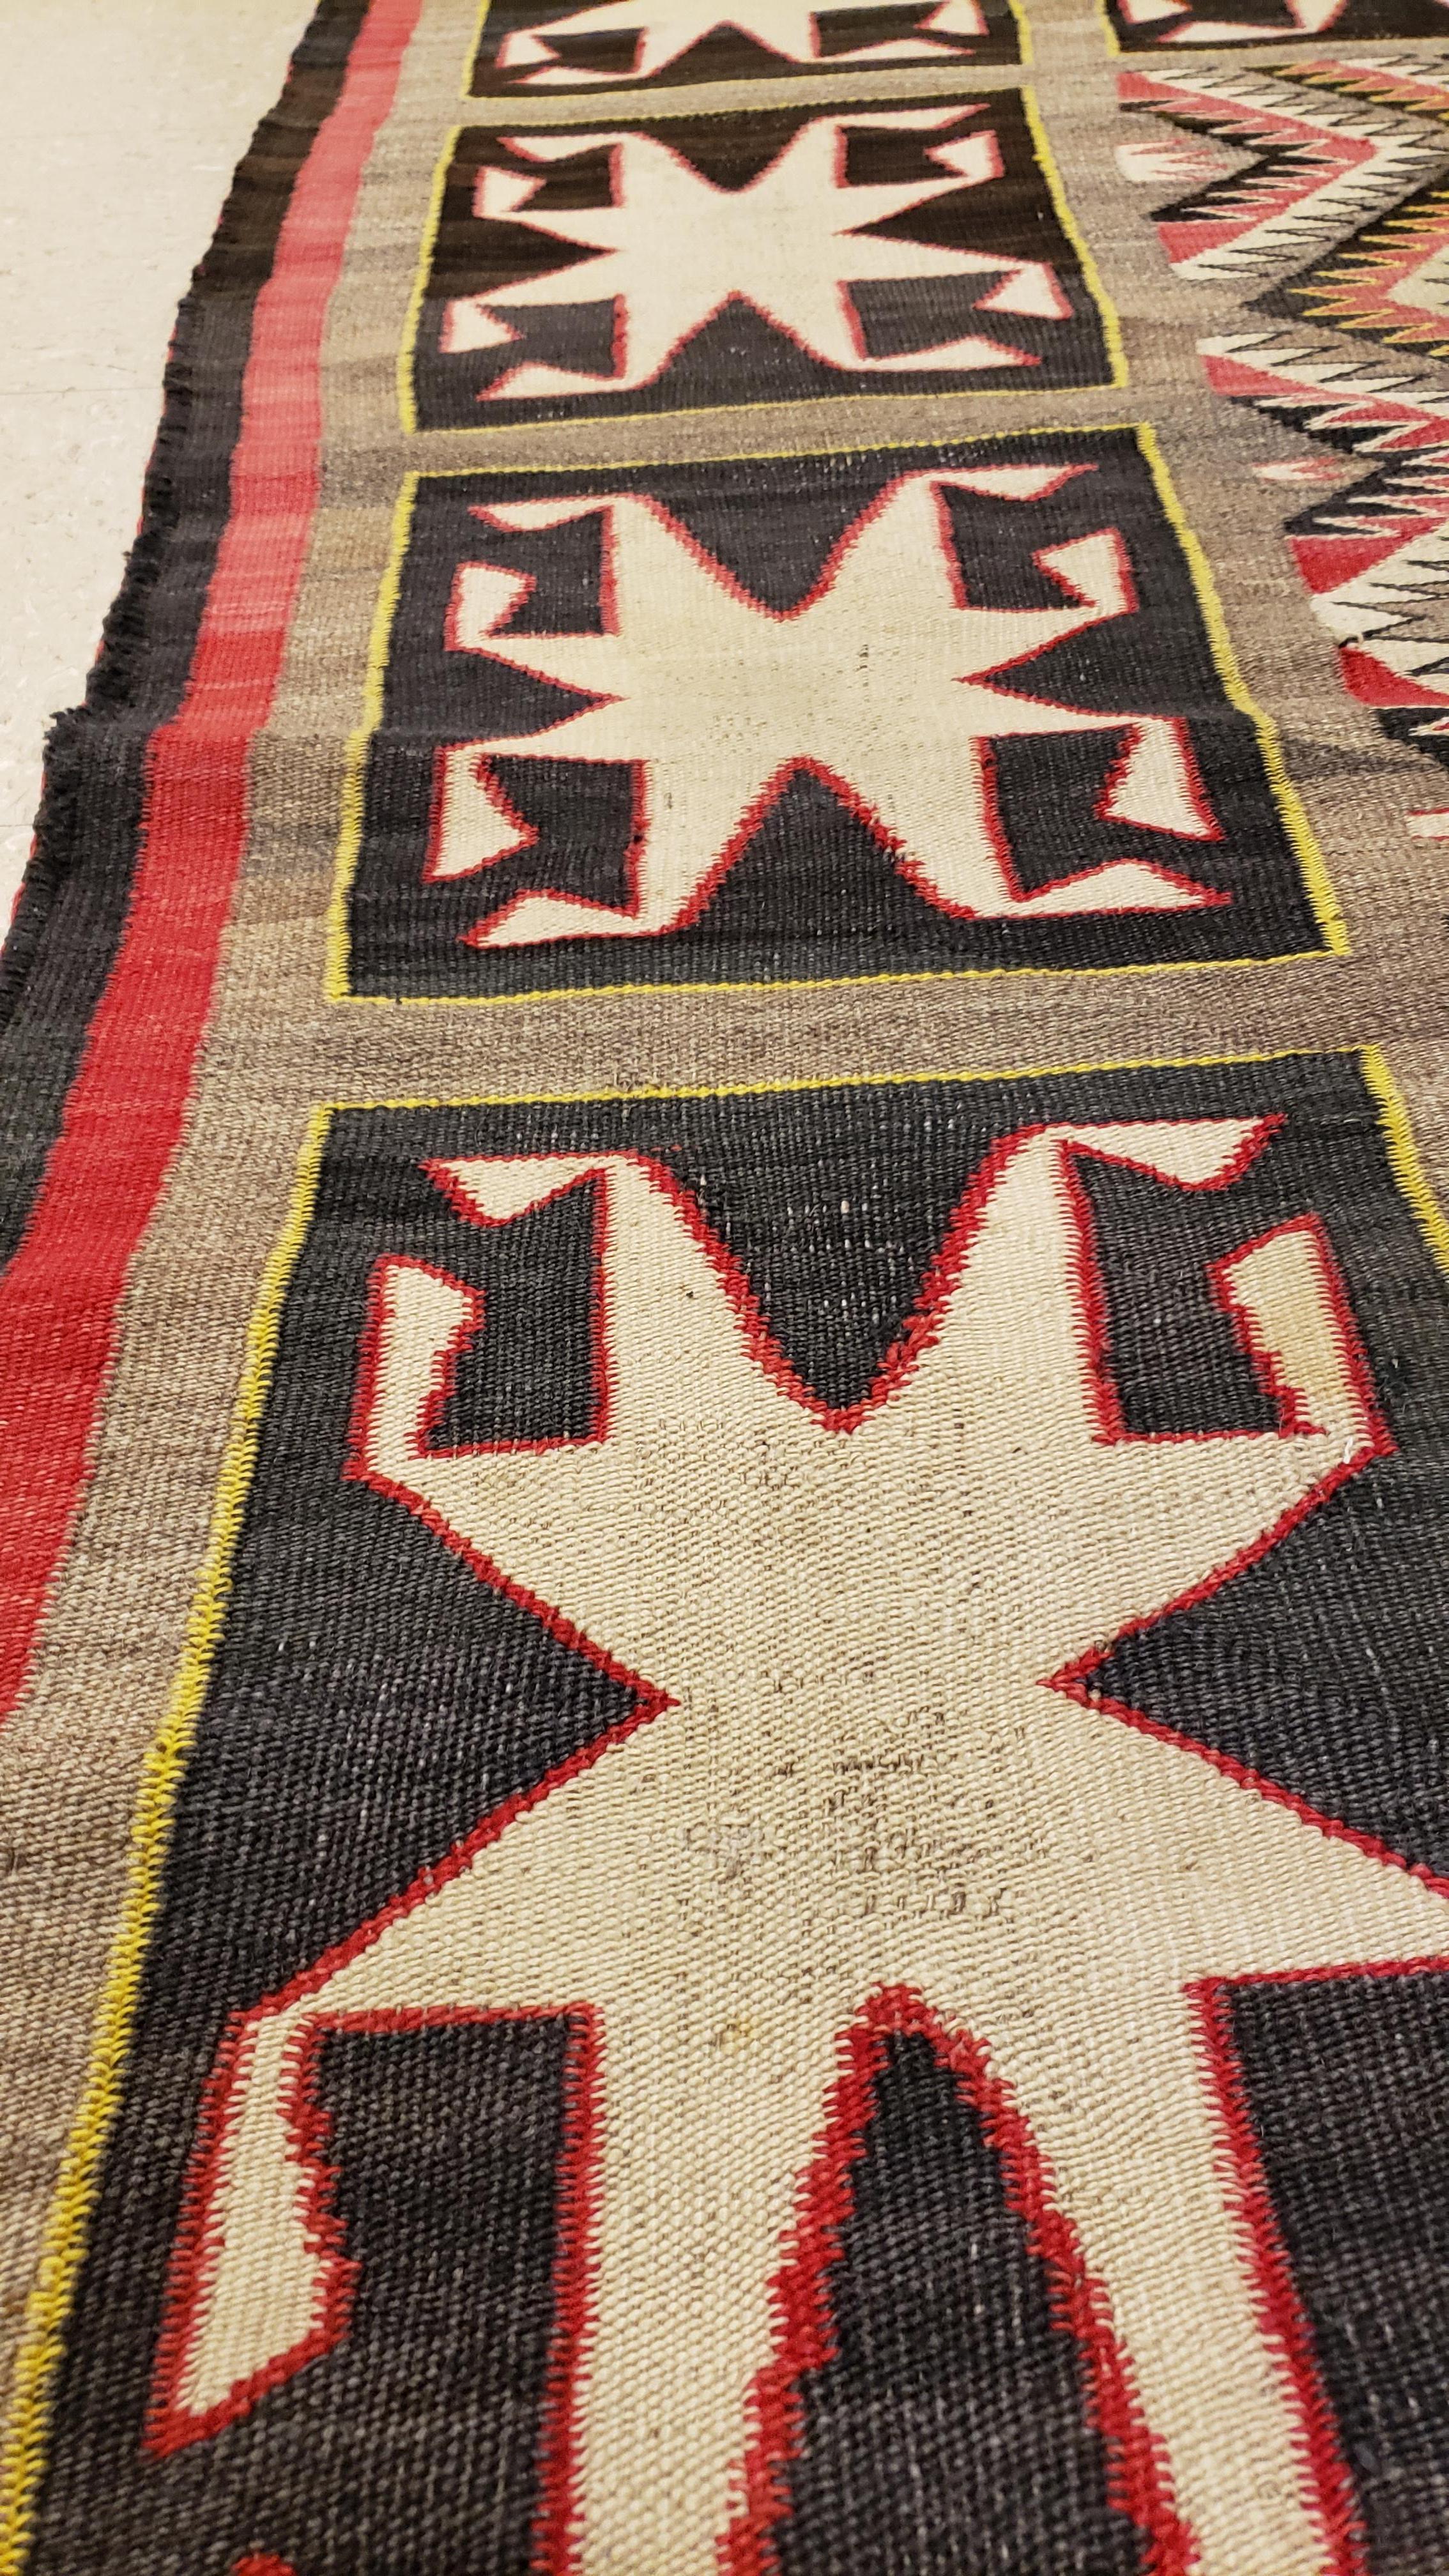 Antique Navajo Rug, Handmade Wool Oriental Rug, Red, Beige and Brown 1